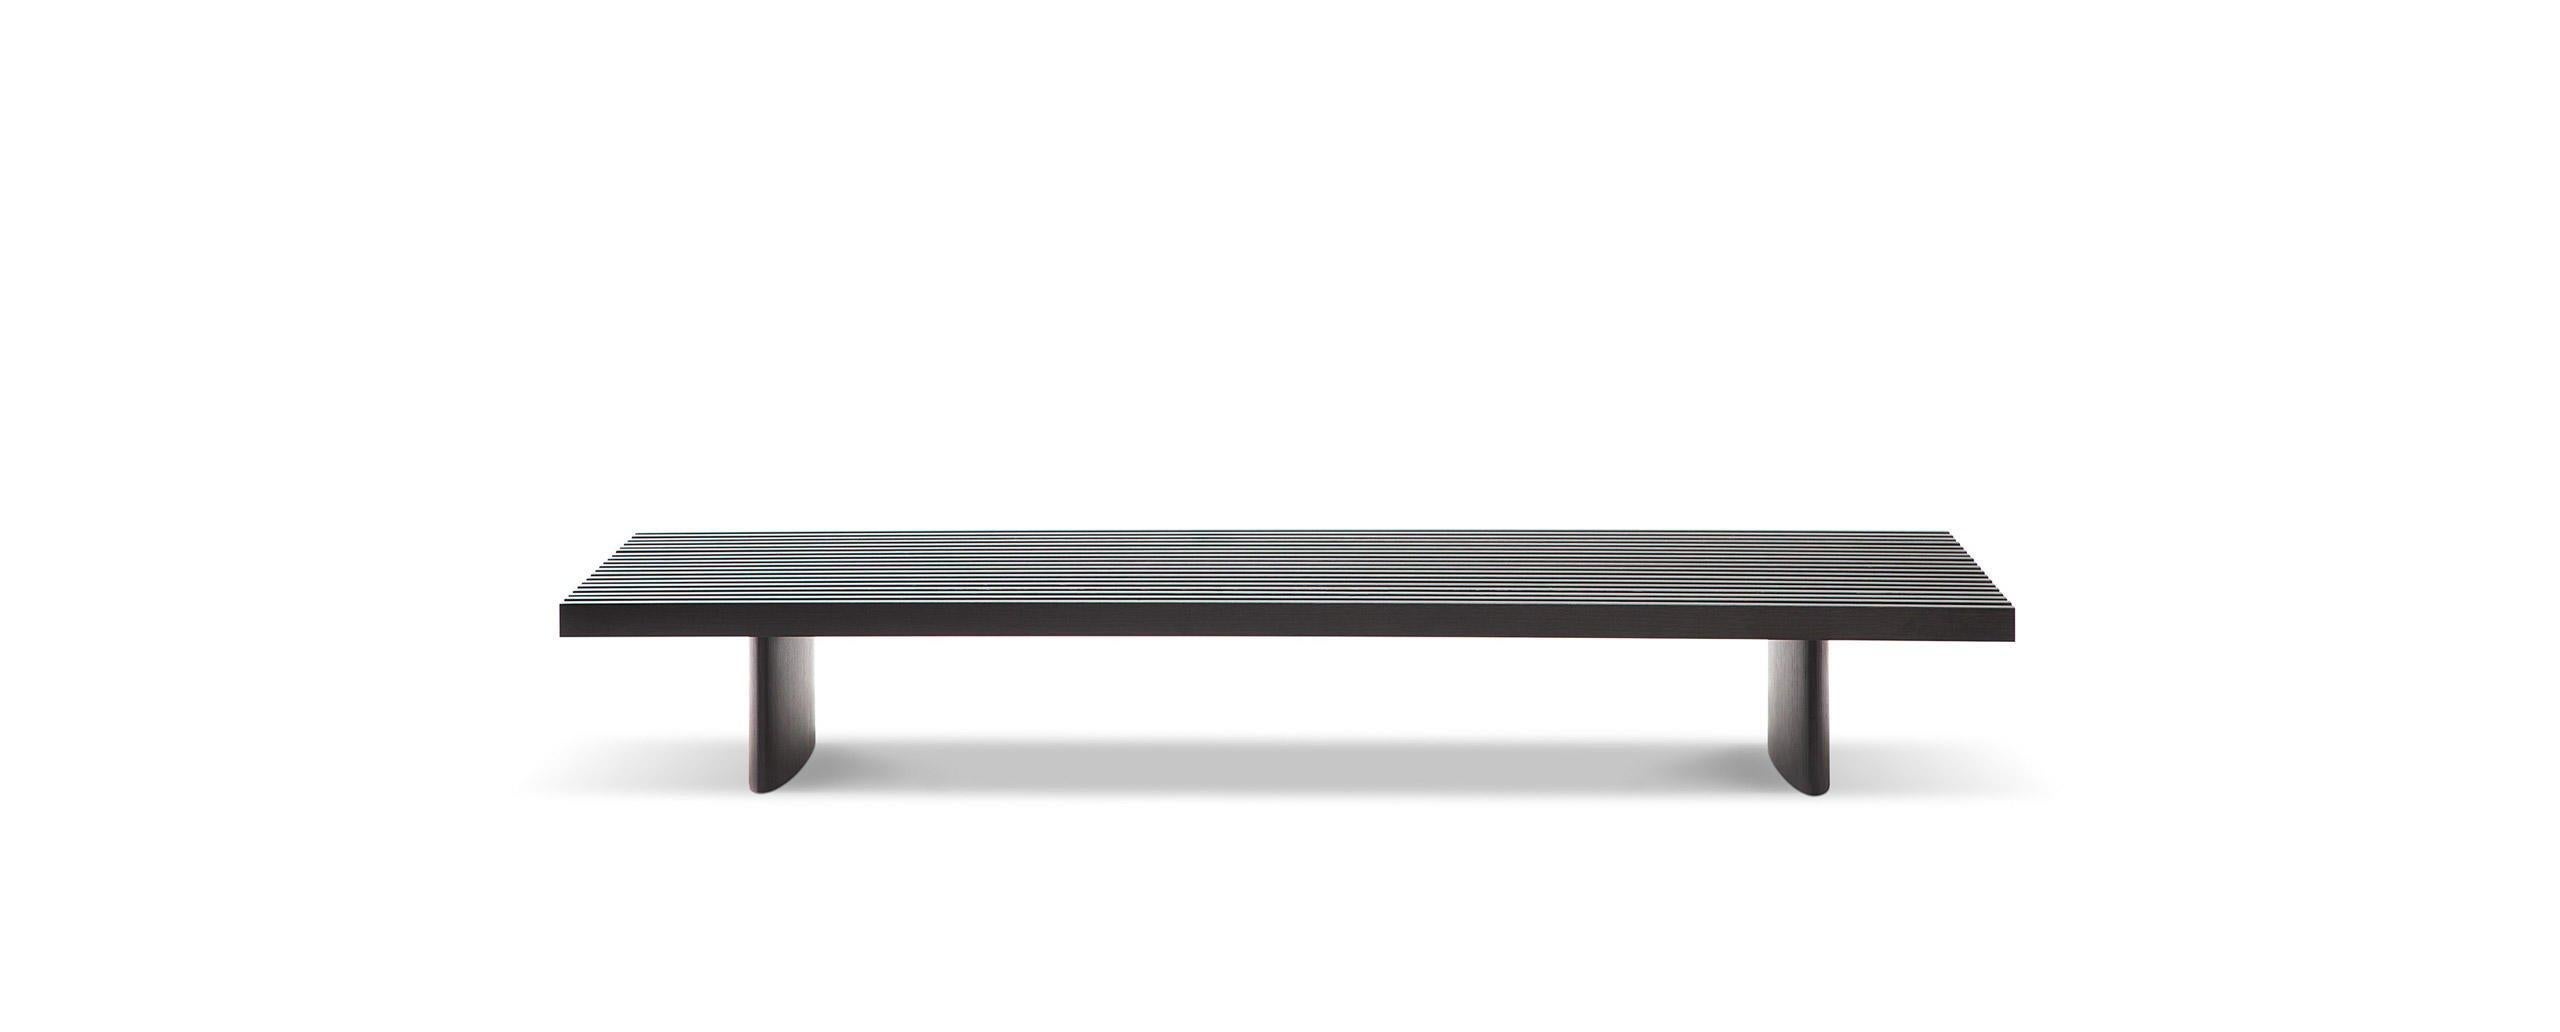 Table basse pouvant servir de siège, de banc ou d'autres options, conçue par Charlotte Perriand en 1953. Relancé par Cassina en 2004. 
Fabriqué par Cassina en Italie.

Cette surface est constituée de dix-neuf lattes courtes disposées parallèlement,